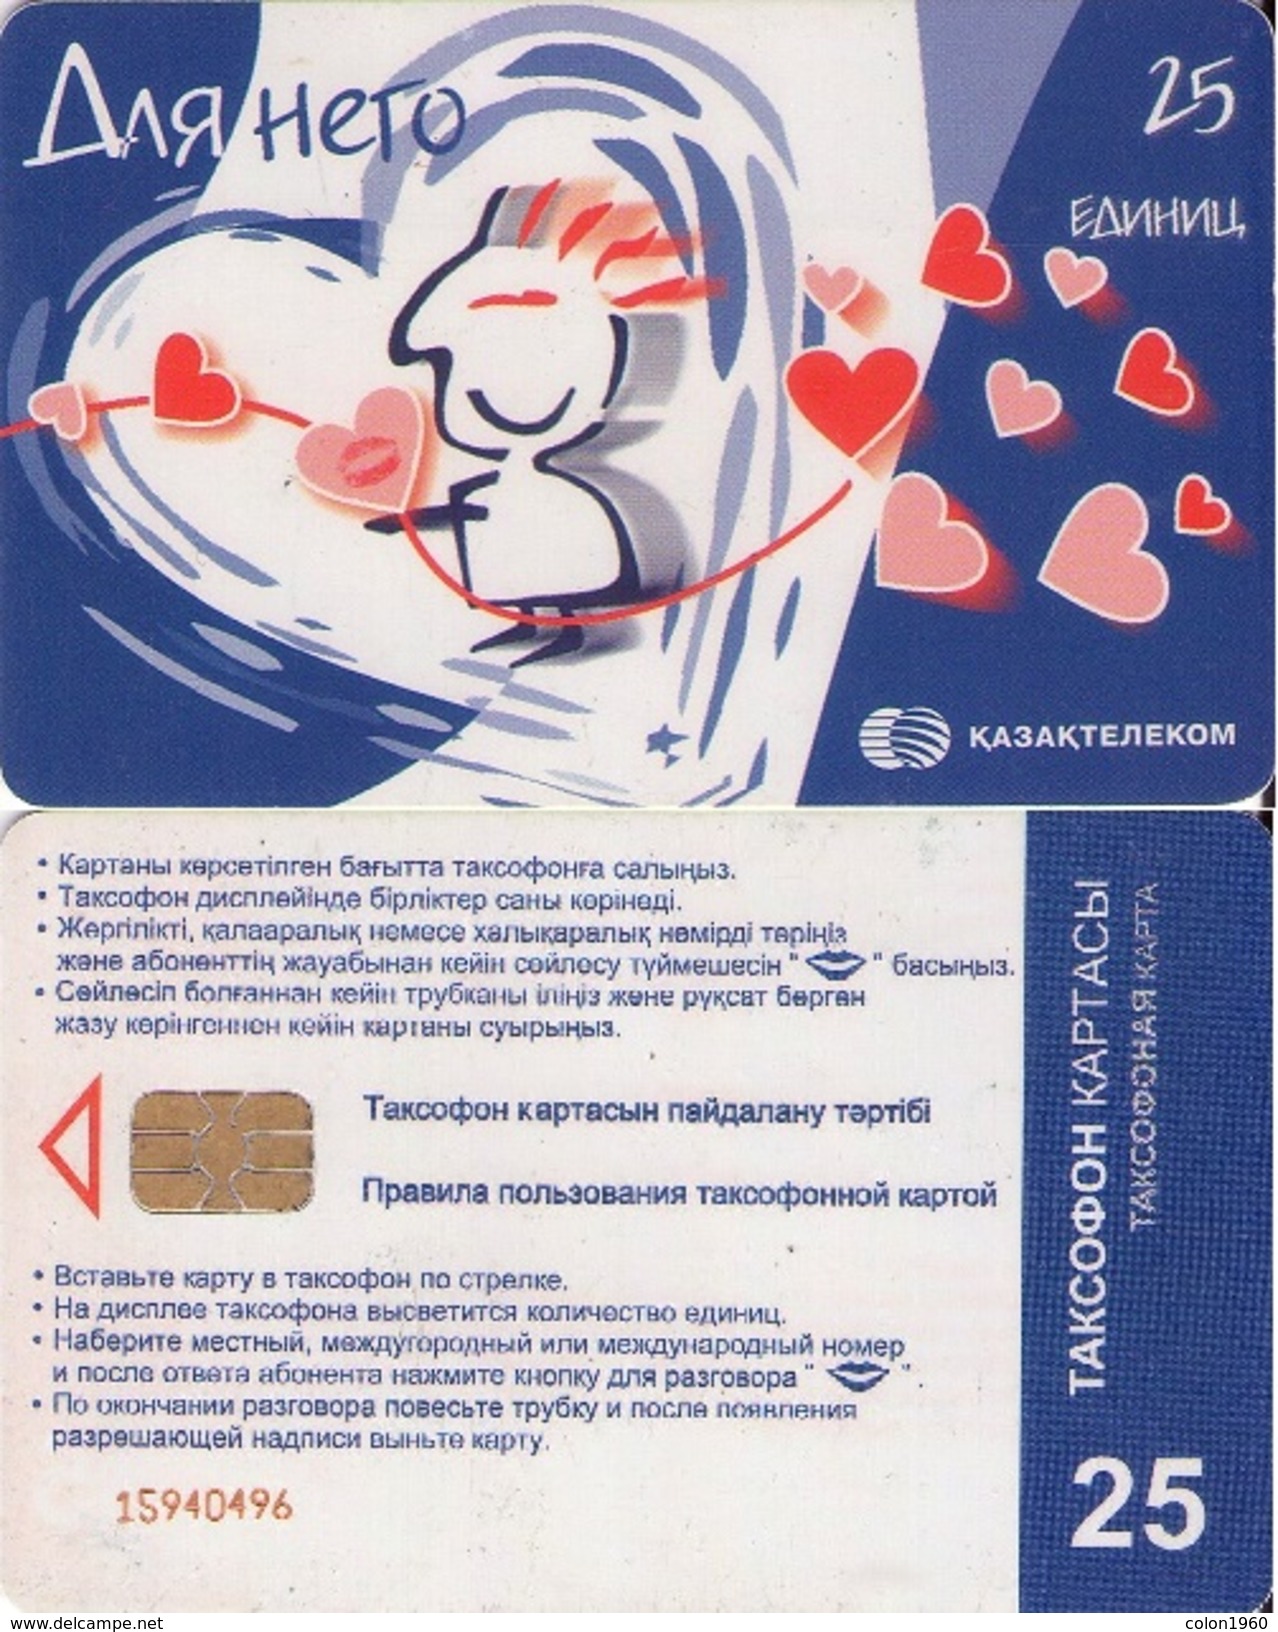 KAZAJSTAN. KZ-KZT-0013. FOR HIM LOVE. 25U. 2004. (008) - Kazakhstan